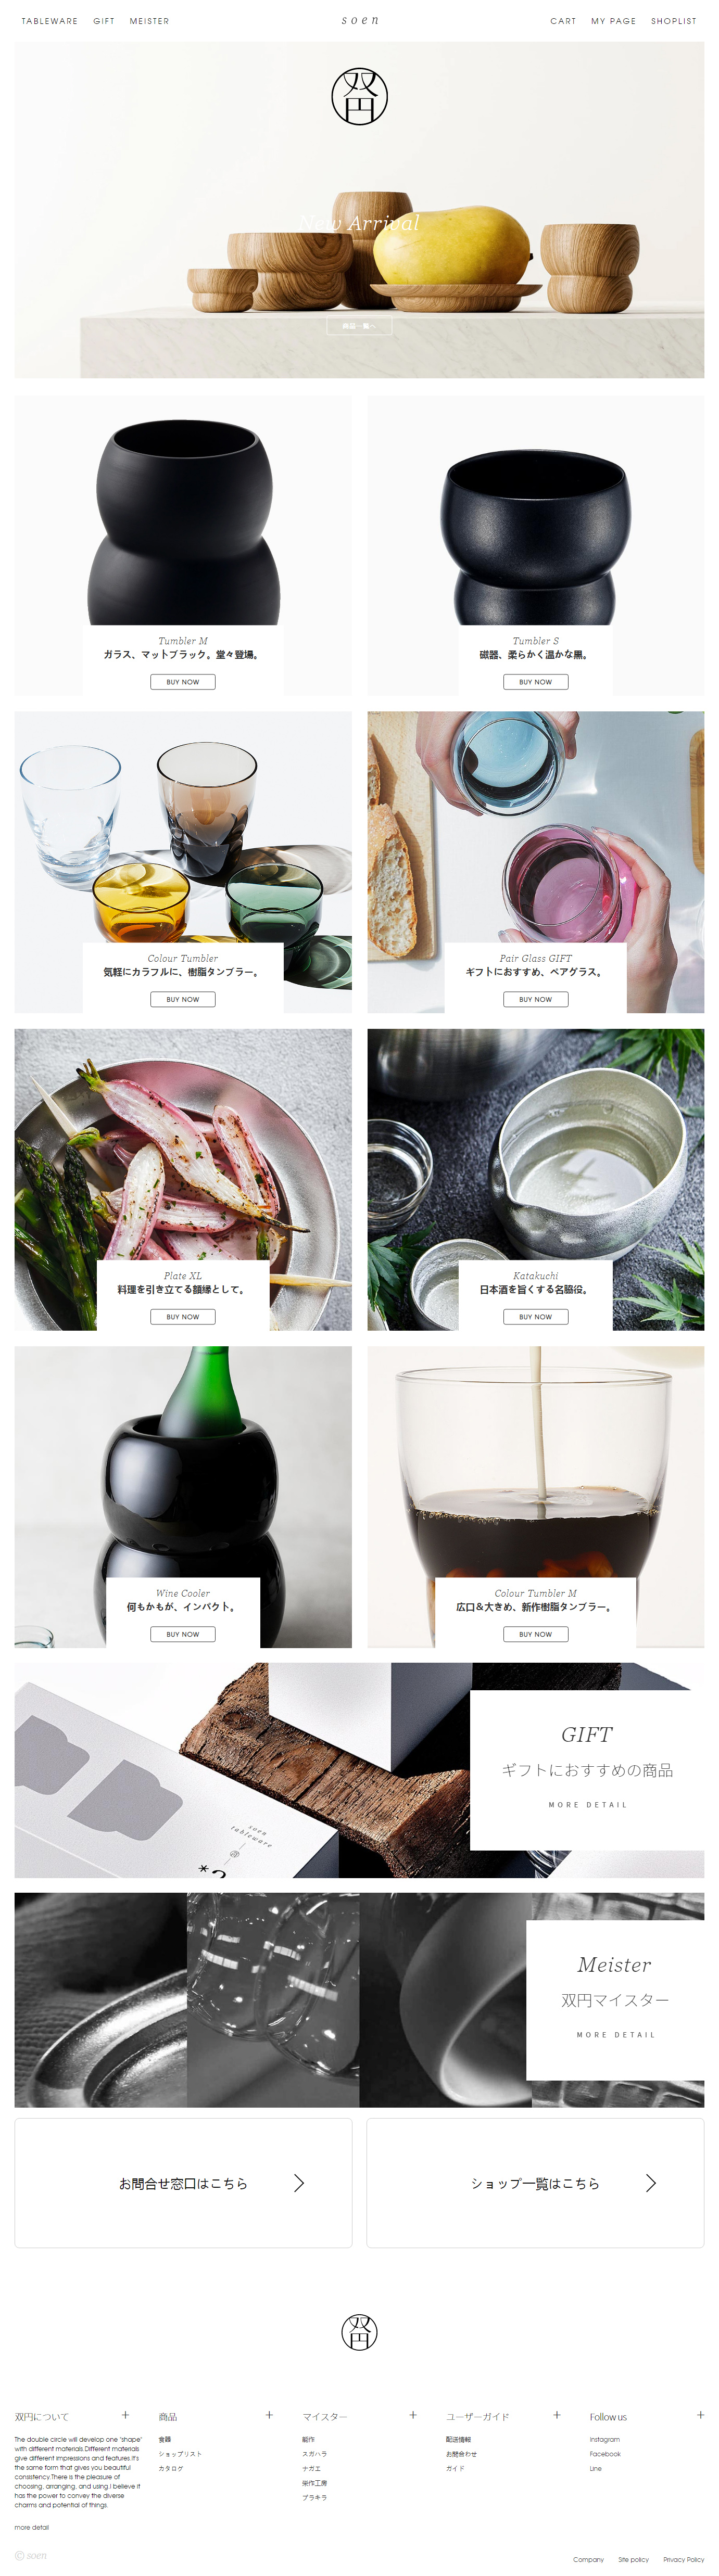 日本Soen餐具网站设计